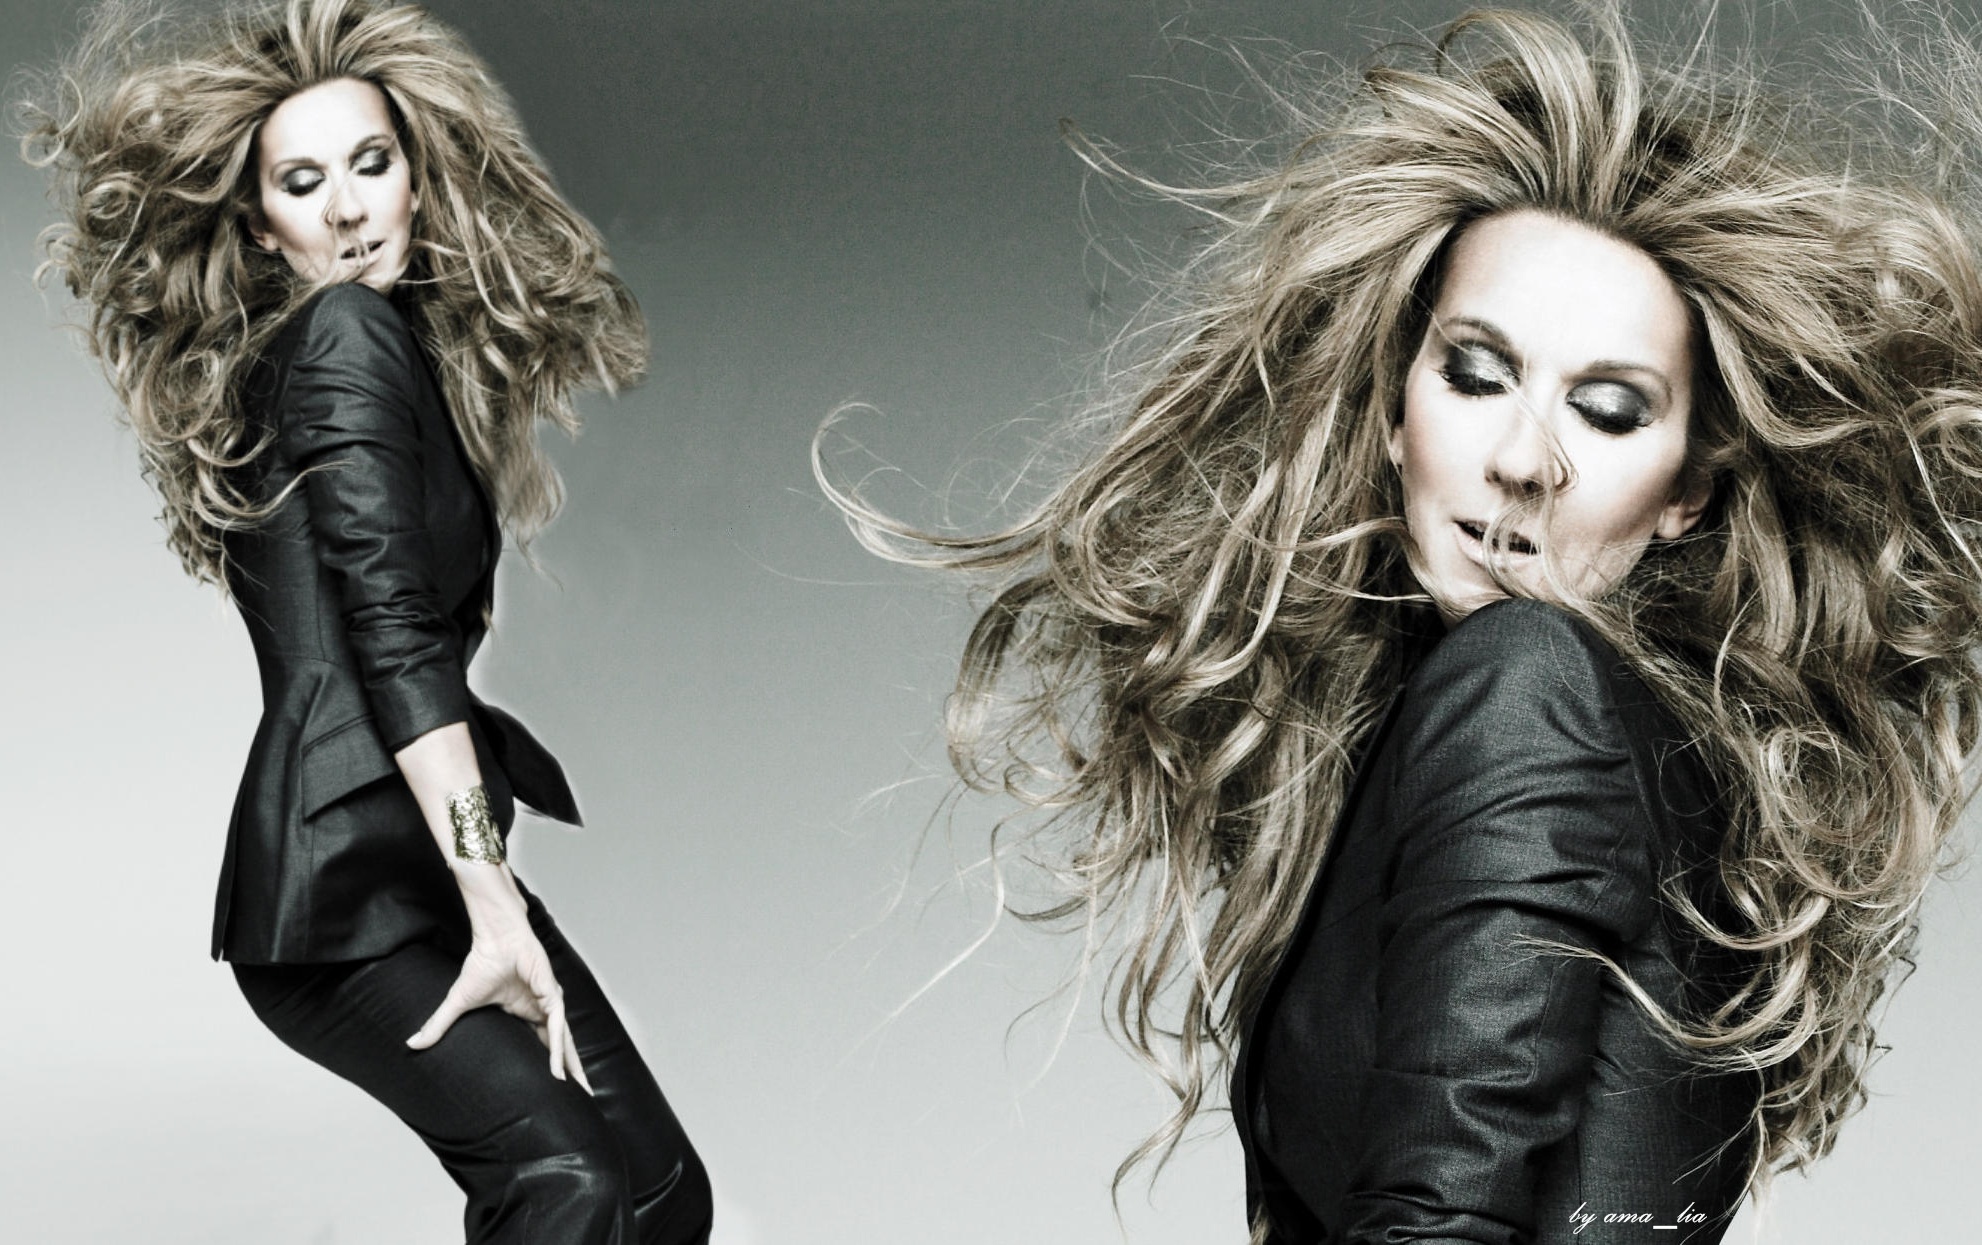 Celine Dion HD Wallpaper Background Image